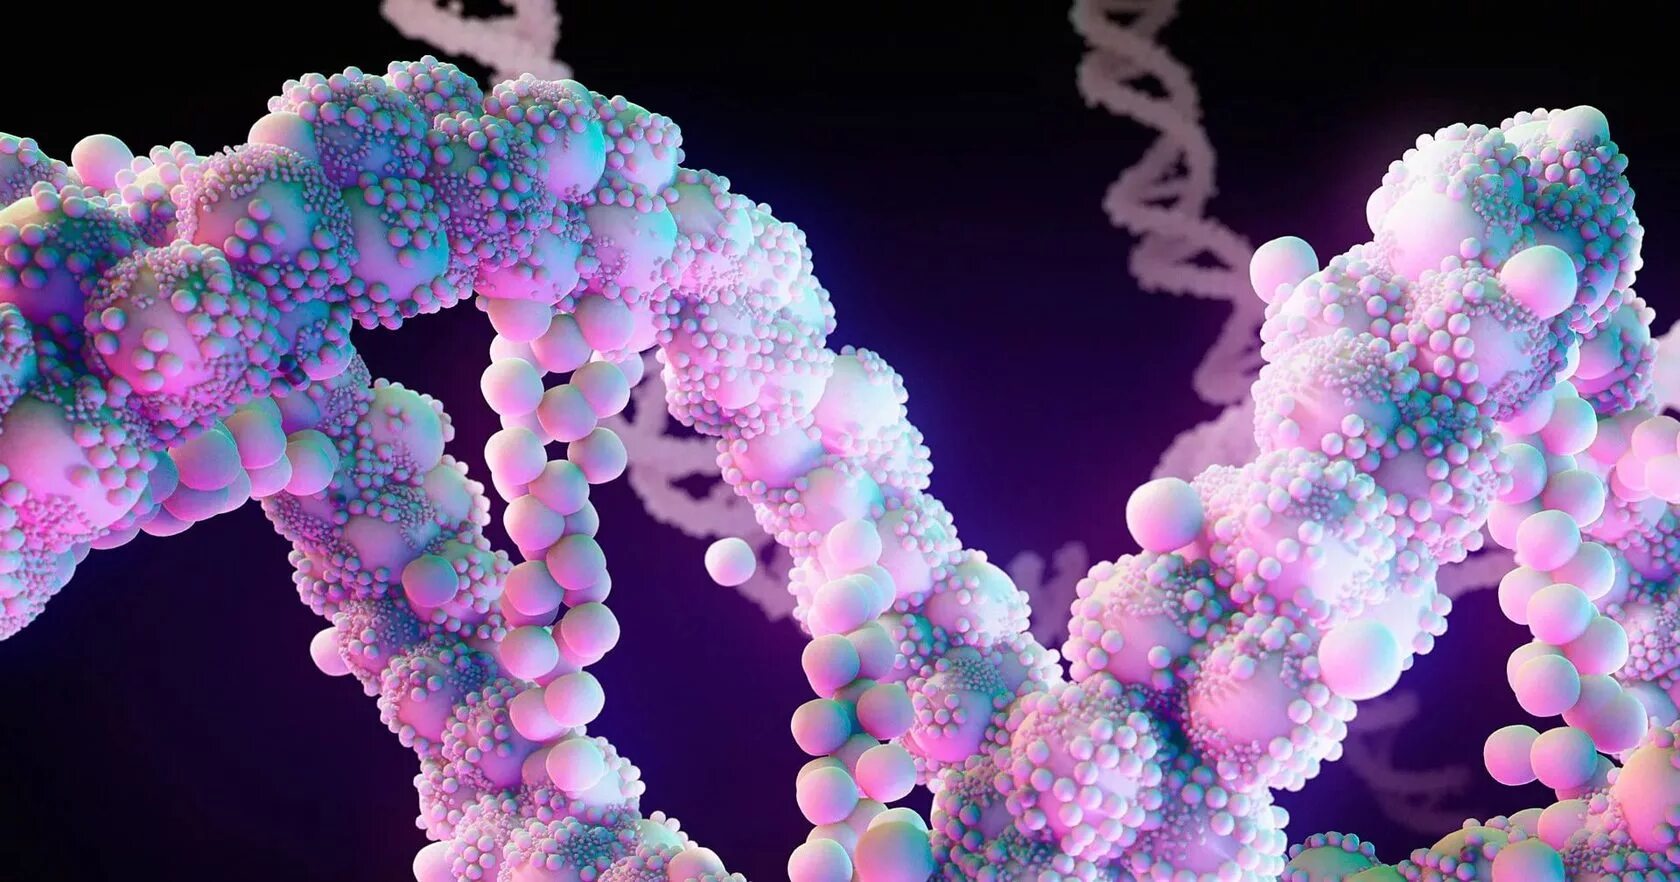 Молекула ДНК. Изображение ДНК. ДНК фото. Красивые молекулы. Молекулярная биобезопасность